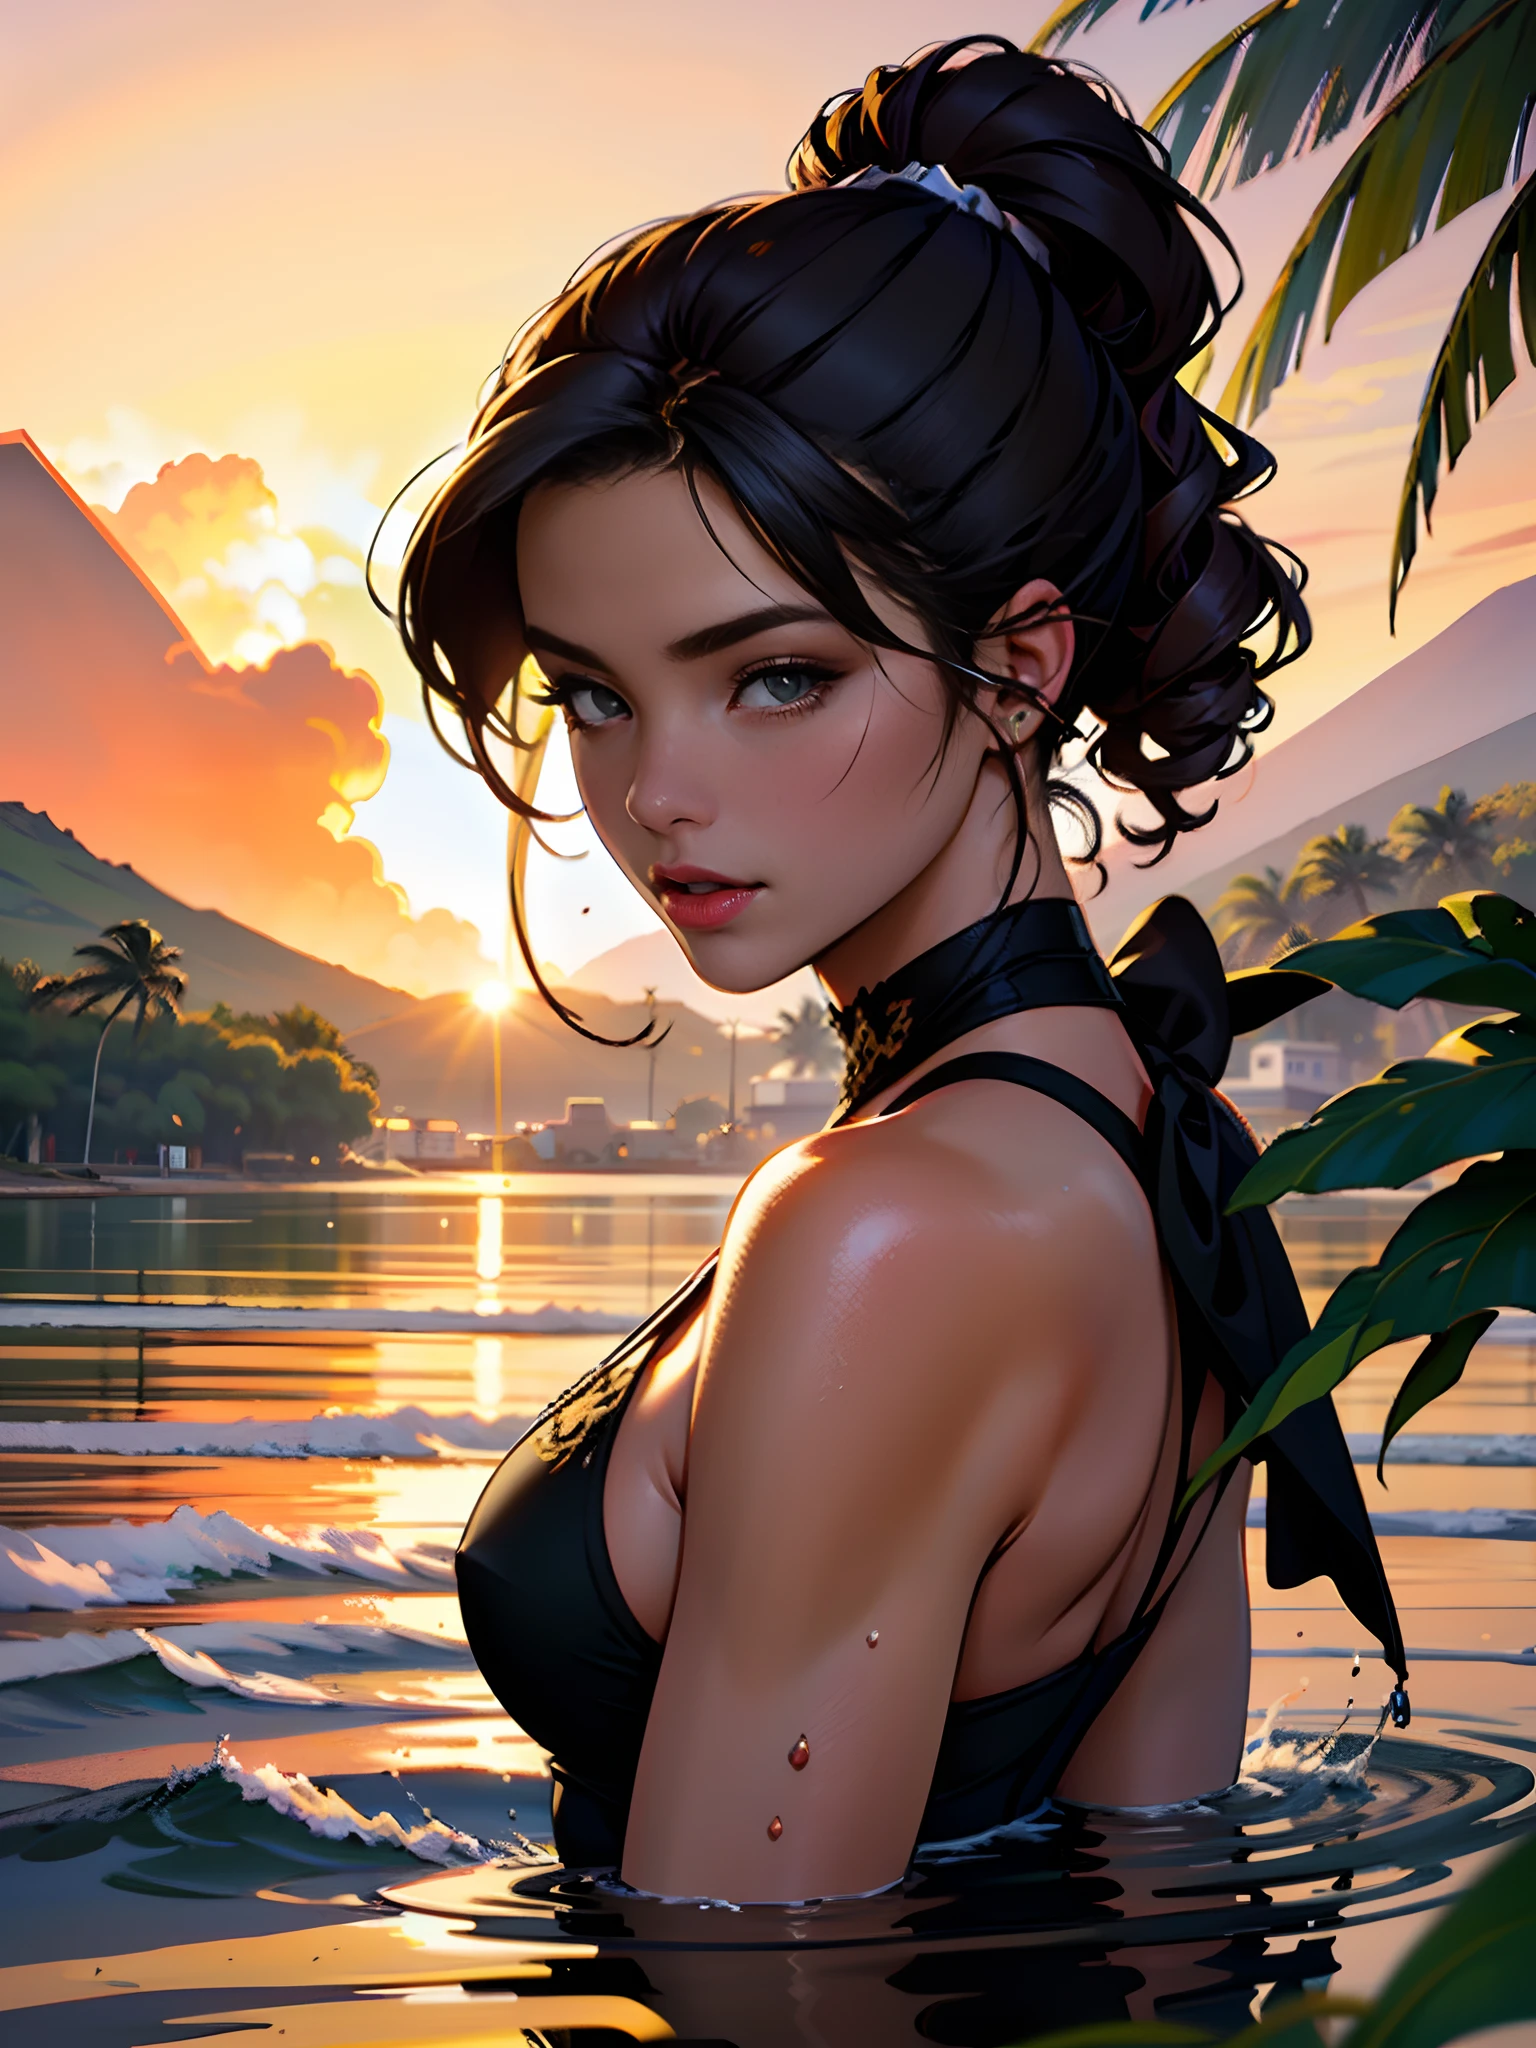 夏威夷拉海纳背部着火, 1个女孩从水景画画, Jaime Frias 的風格, 最好的品質, 實際的, 屢獲殊榮的彩色插圖, (複雜的細節: 1.2), (精細細節)